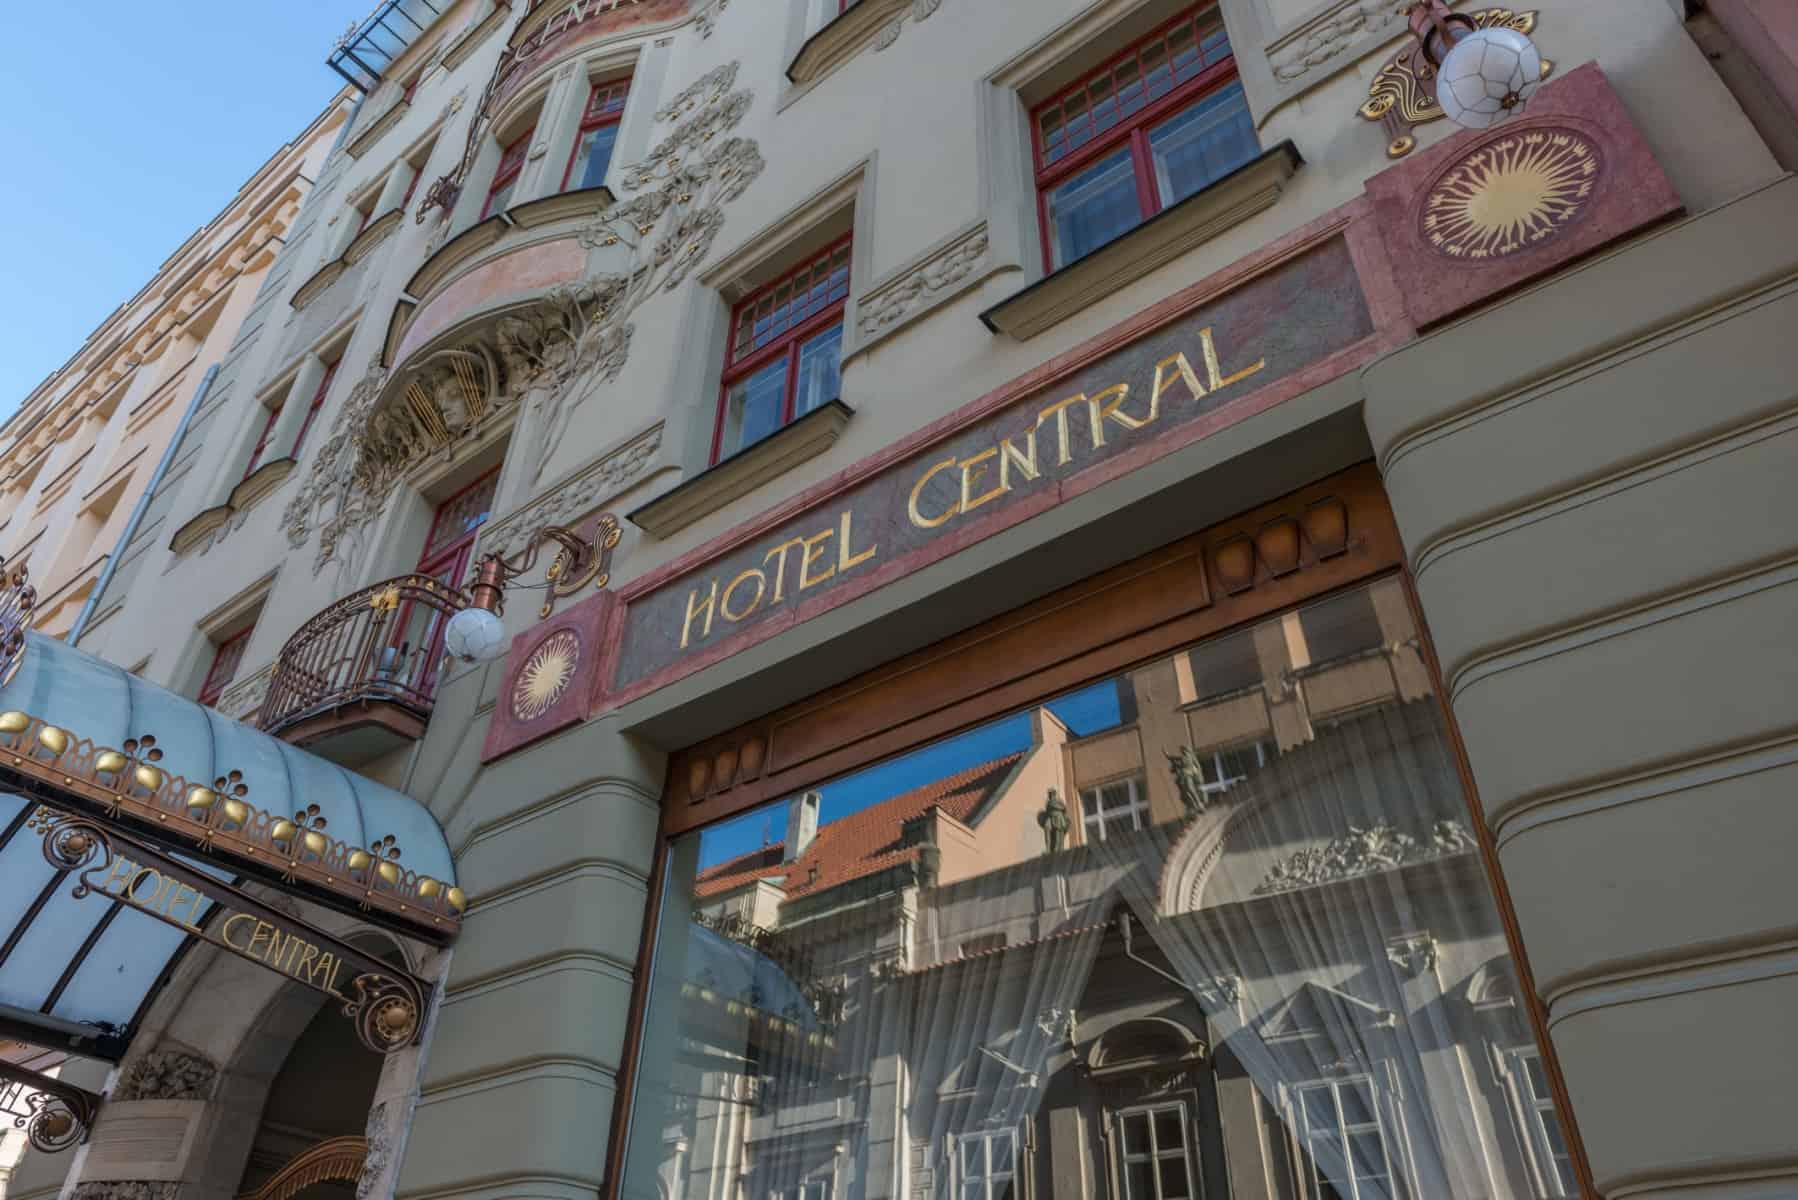 1_KK-Hotel-Central-Facade-2